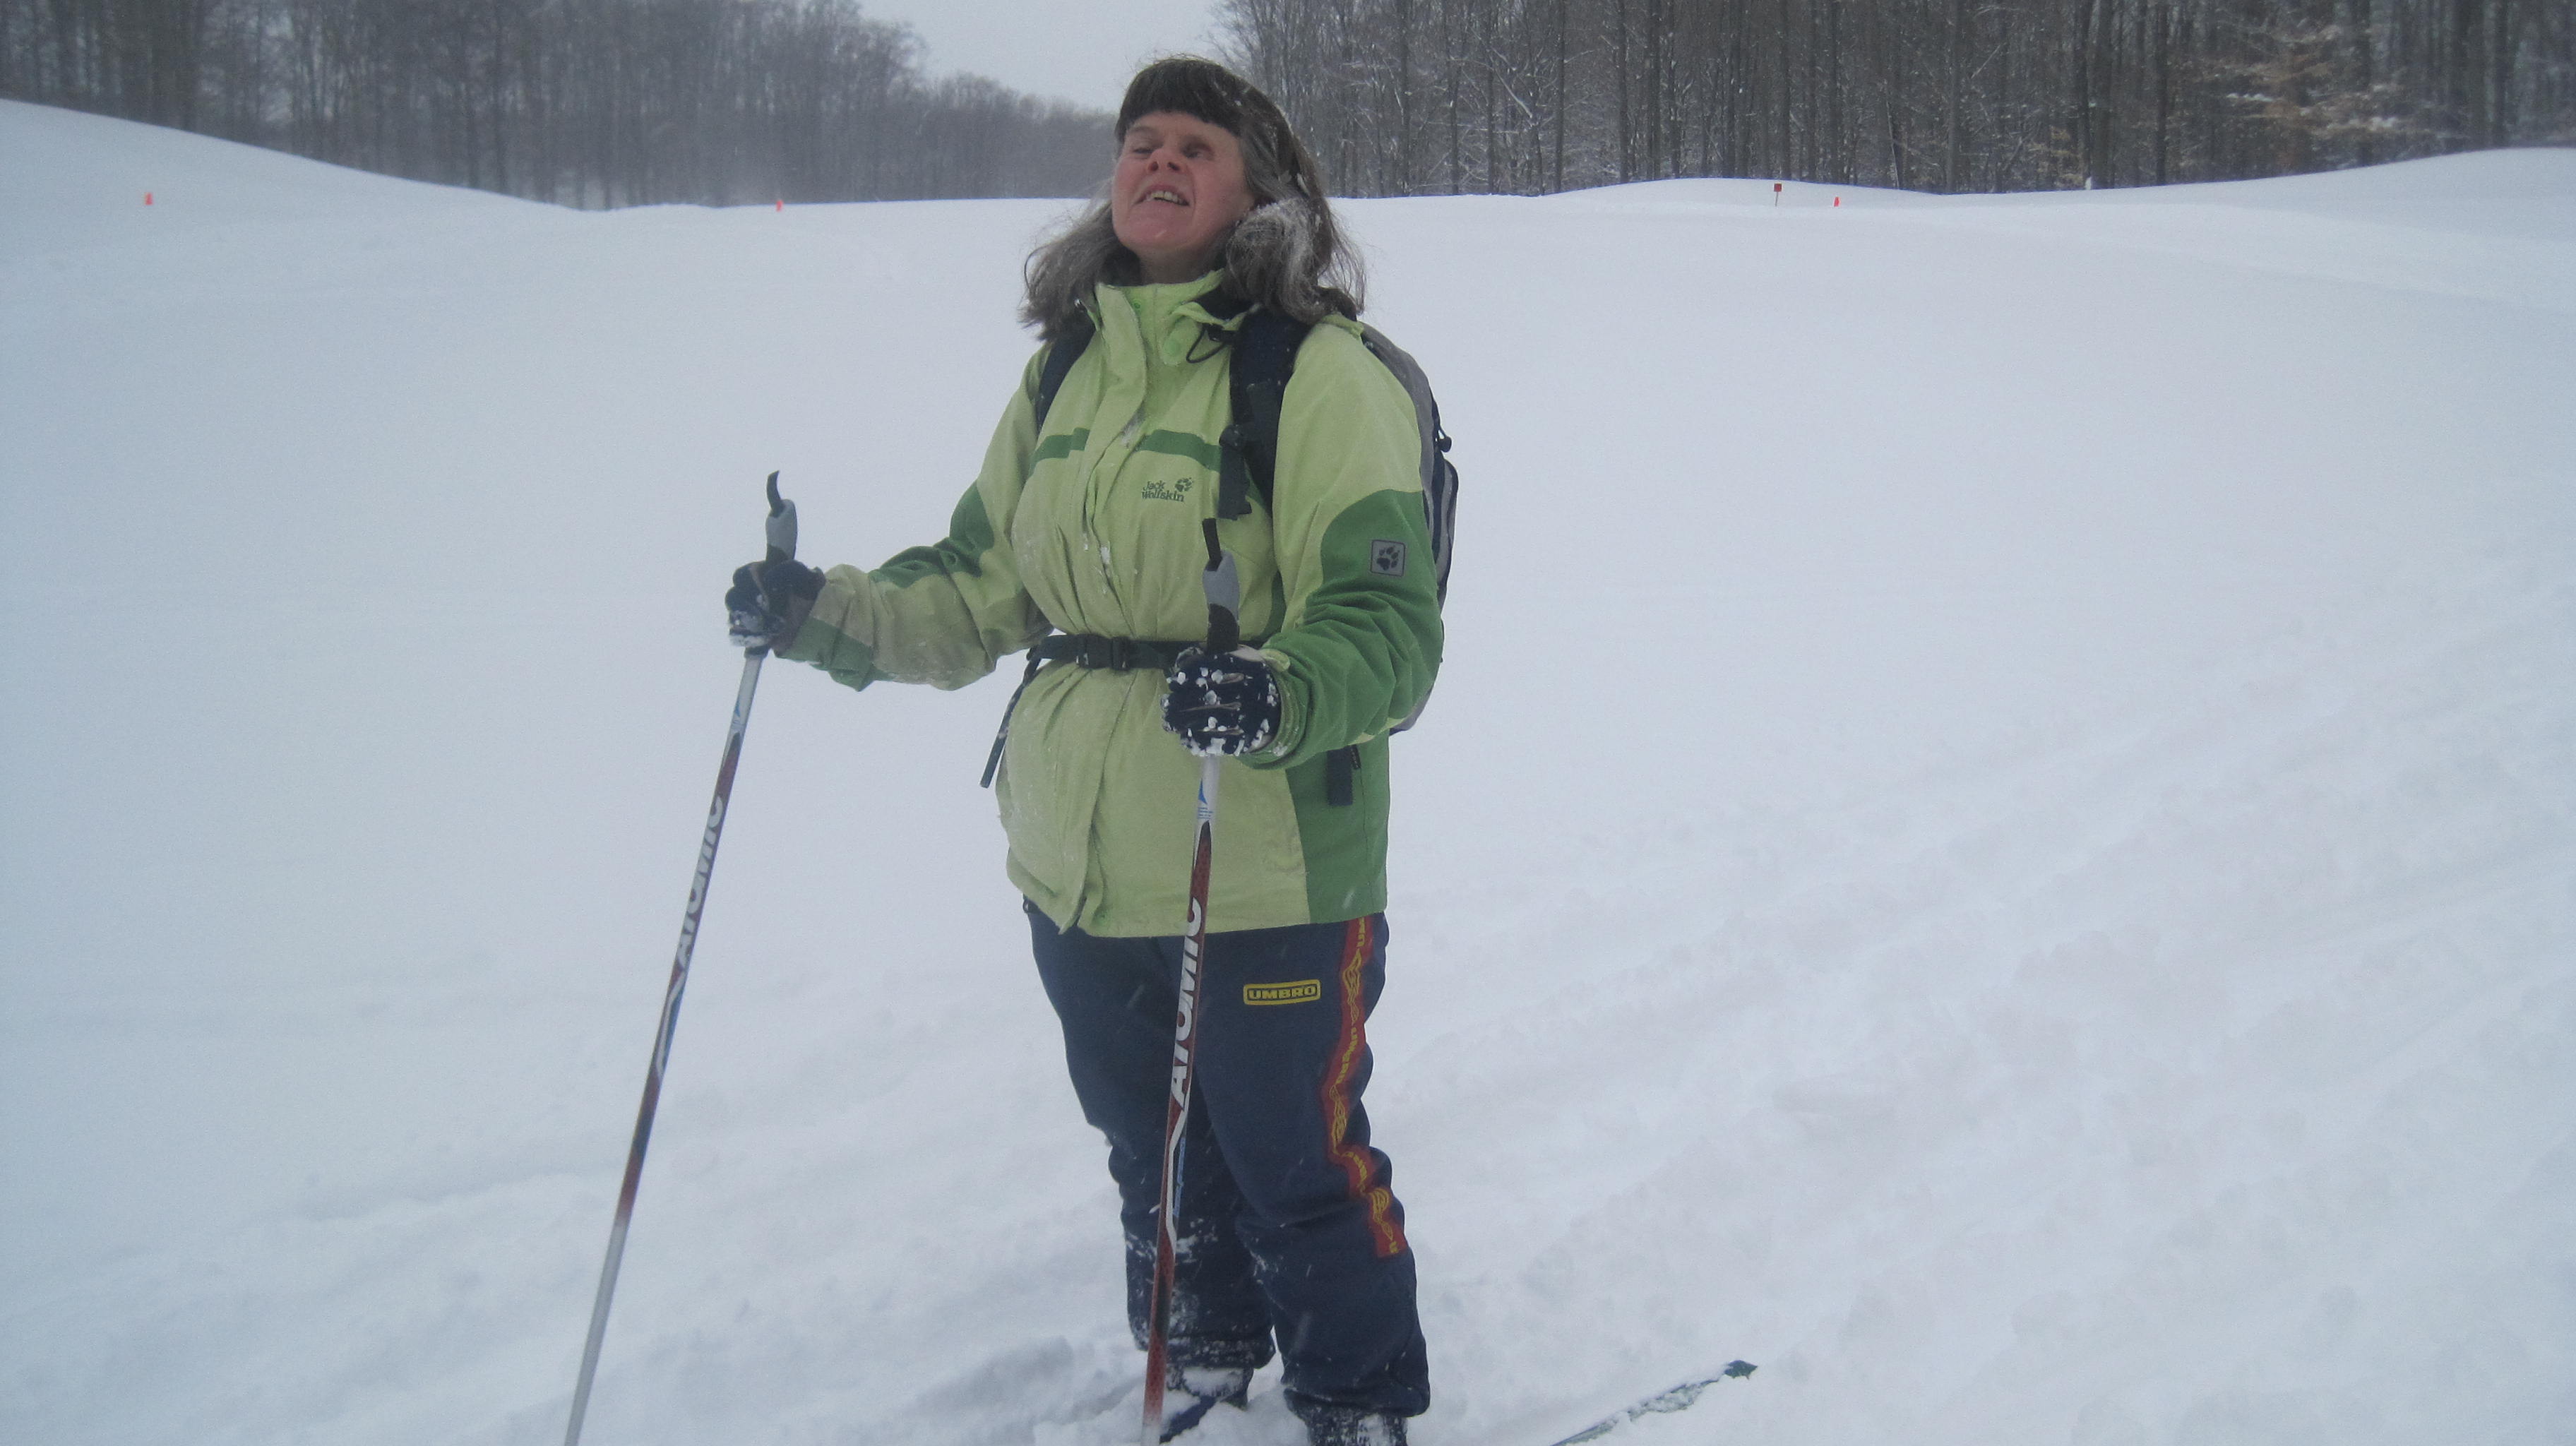 Laura, Bill's skier